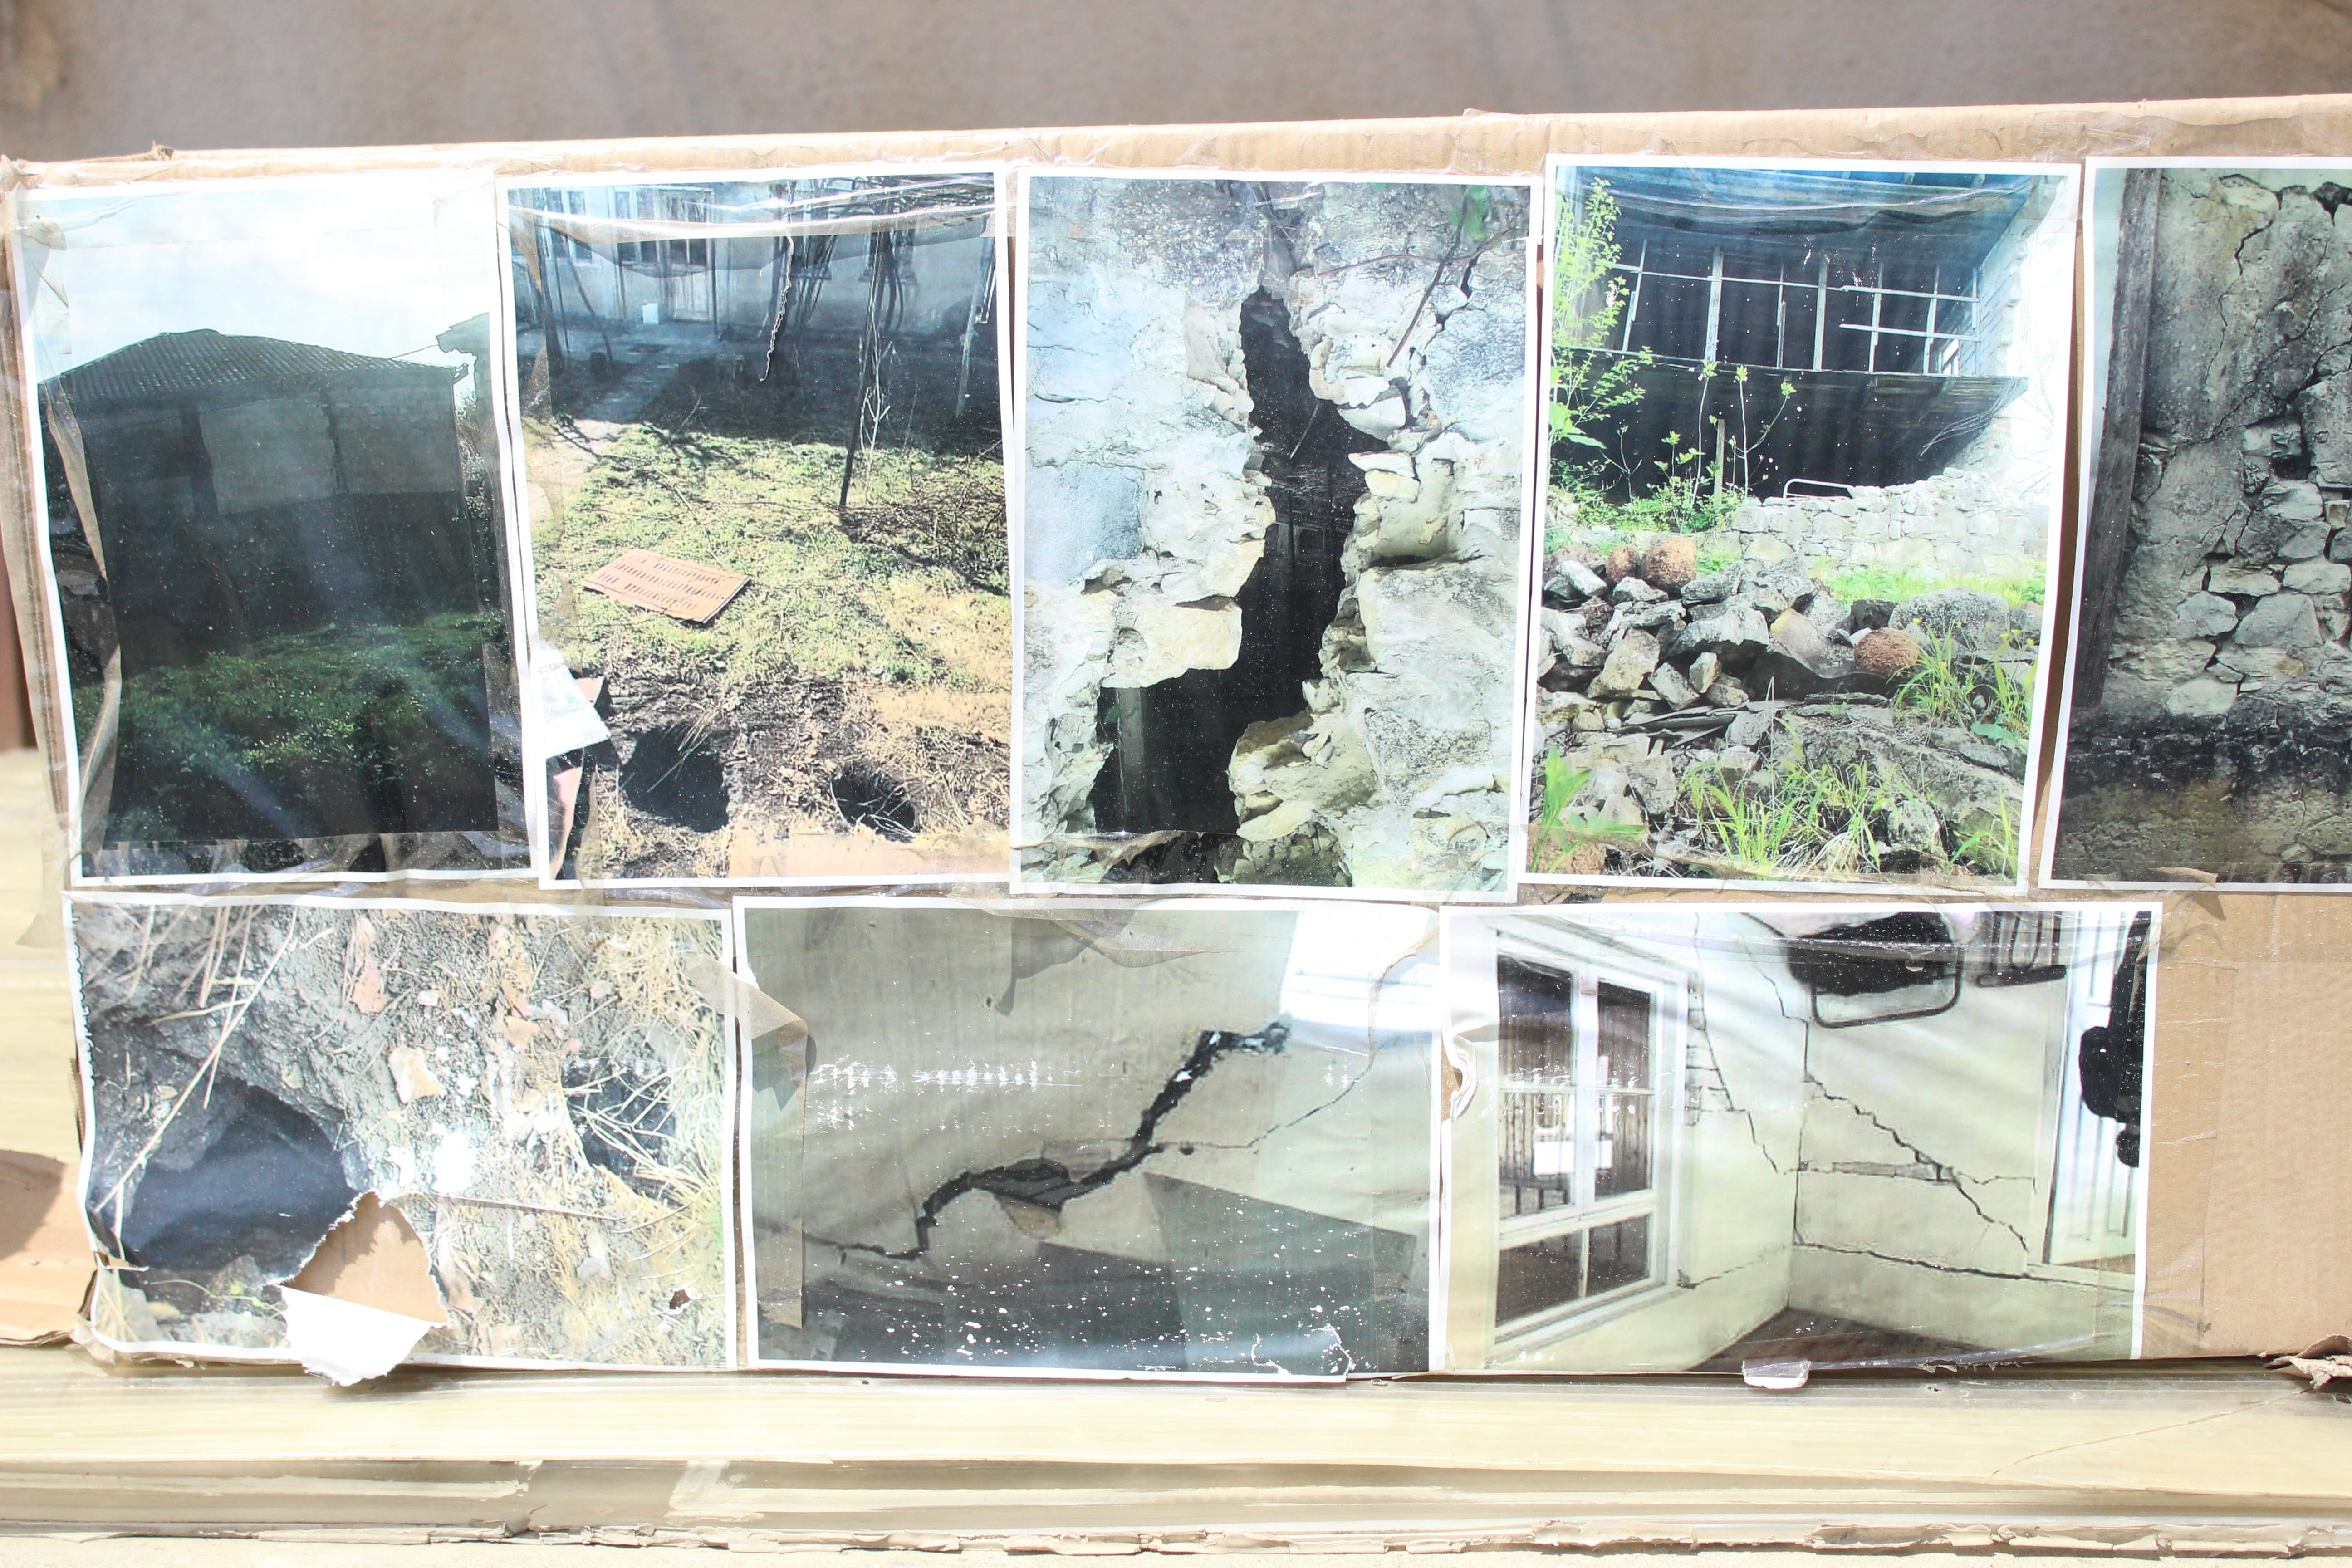 Фото поврежденных домов в селе Шукрути, выставленные участниками голодовки в Тбилиси. 5 июня 2021 года. Фото Инны Кукуджановой для "Кавказского узла"